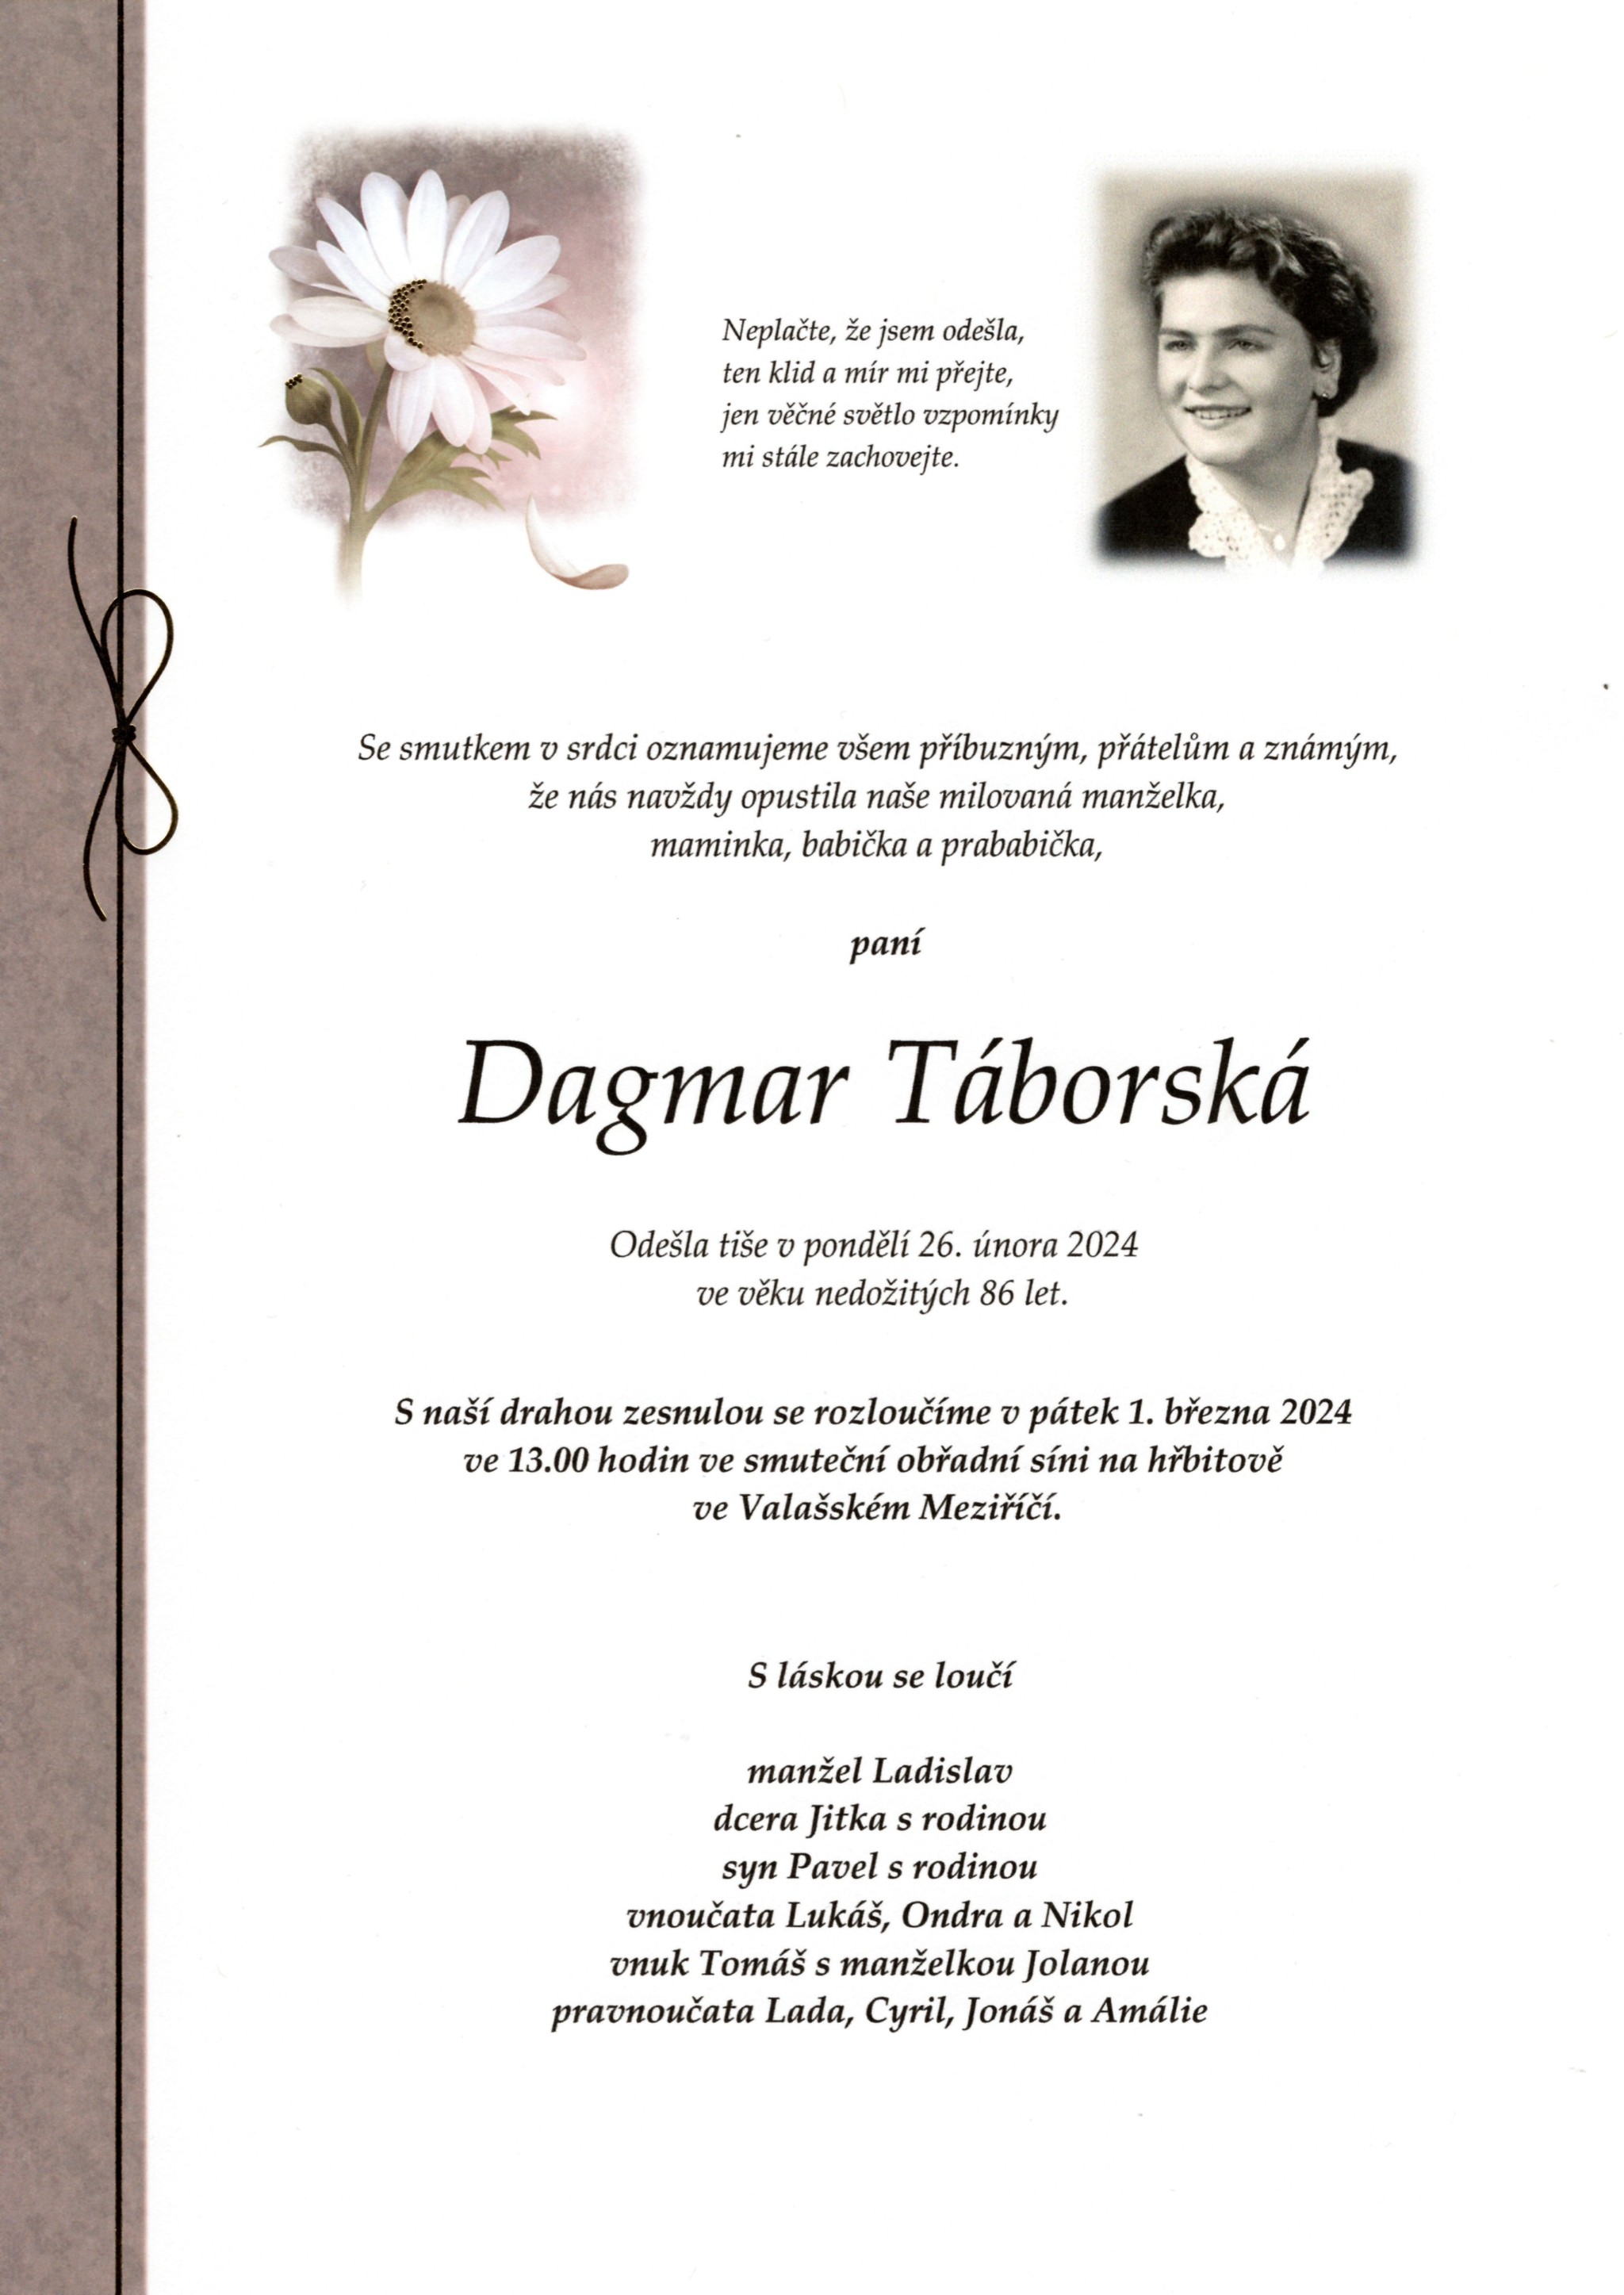 Dagmar Táborská